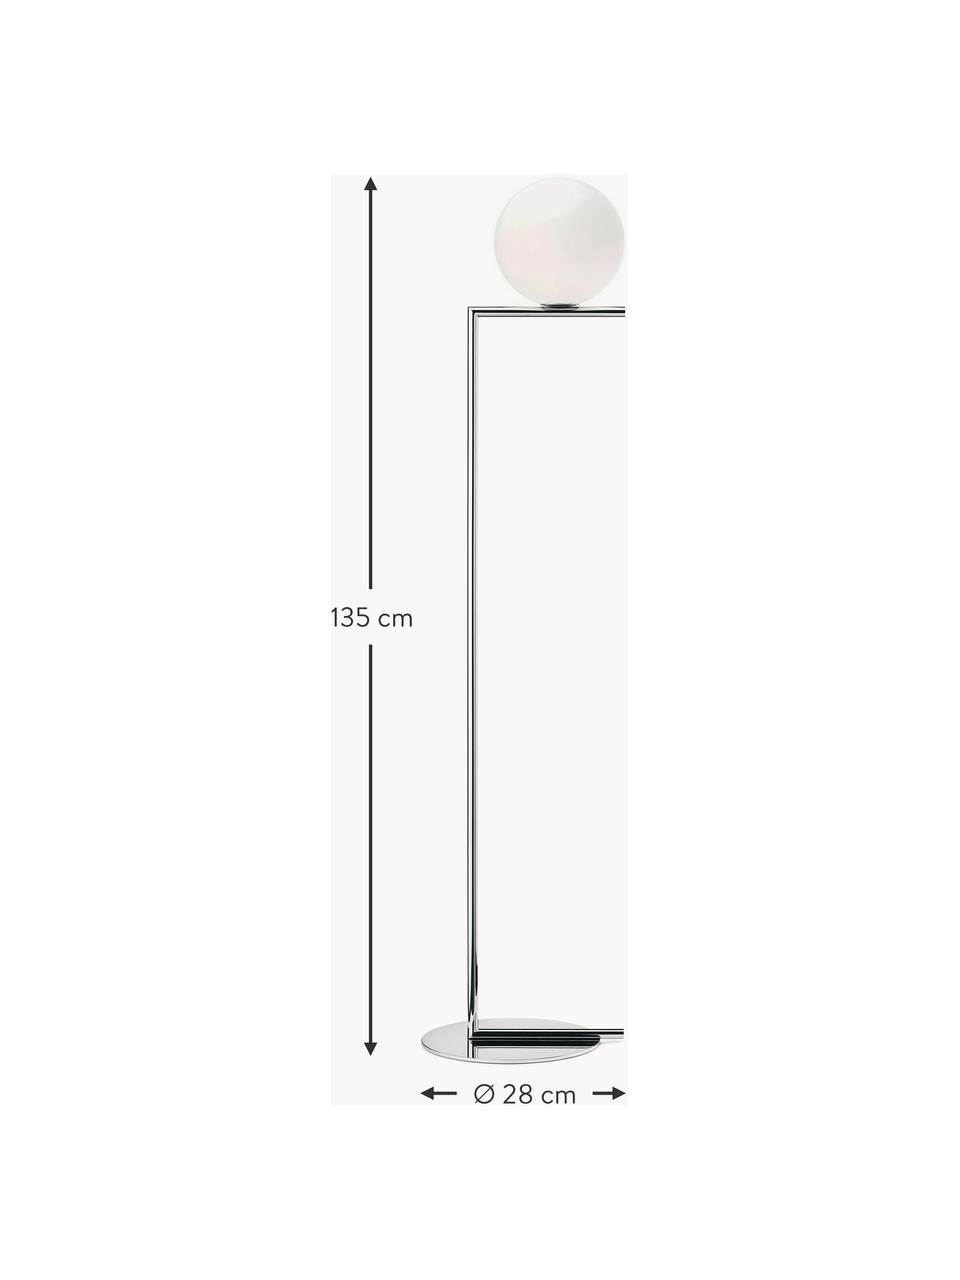 Lámpara de pie regulable soplada artesanalmente IC Lights, Pantalla: vidrio, Estructura: metal recubierto, Cable: plástico, Plateado, blanco, Al 135 cm